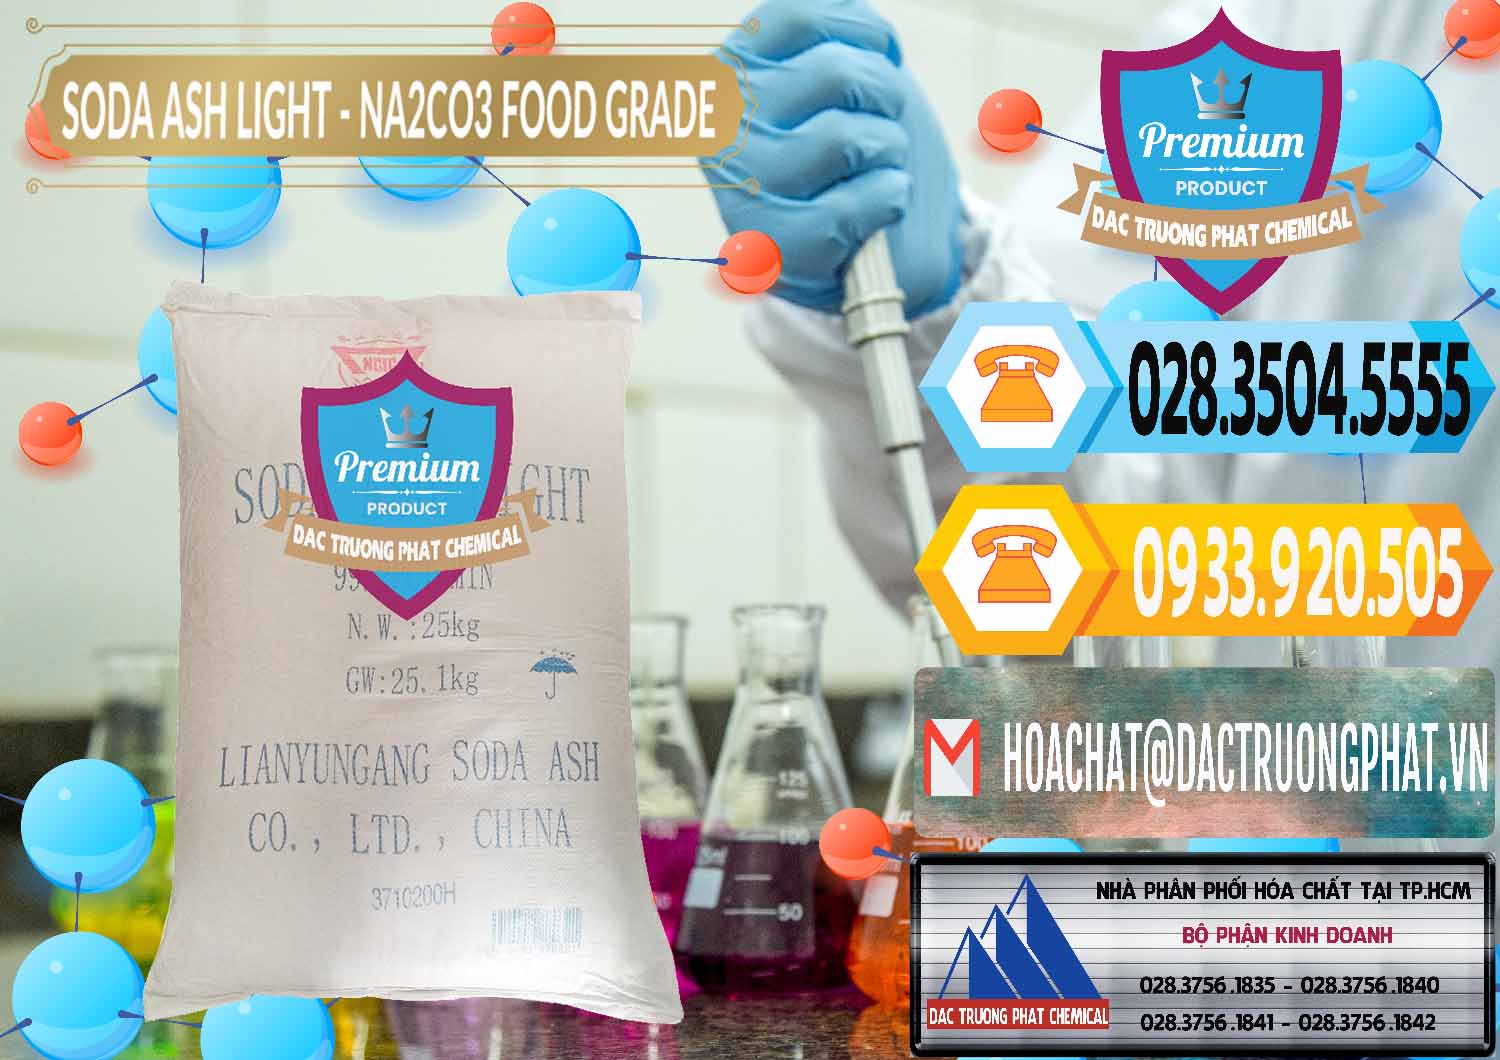 Cty bán - cung ứng Soda Ash Light – NA2CO3 Food Grade Trung Quốc China - 0127 - Cty bán _ cung cấp hóa chất tại TP.HCM - hoachattayrua.net